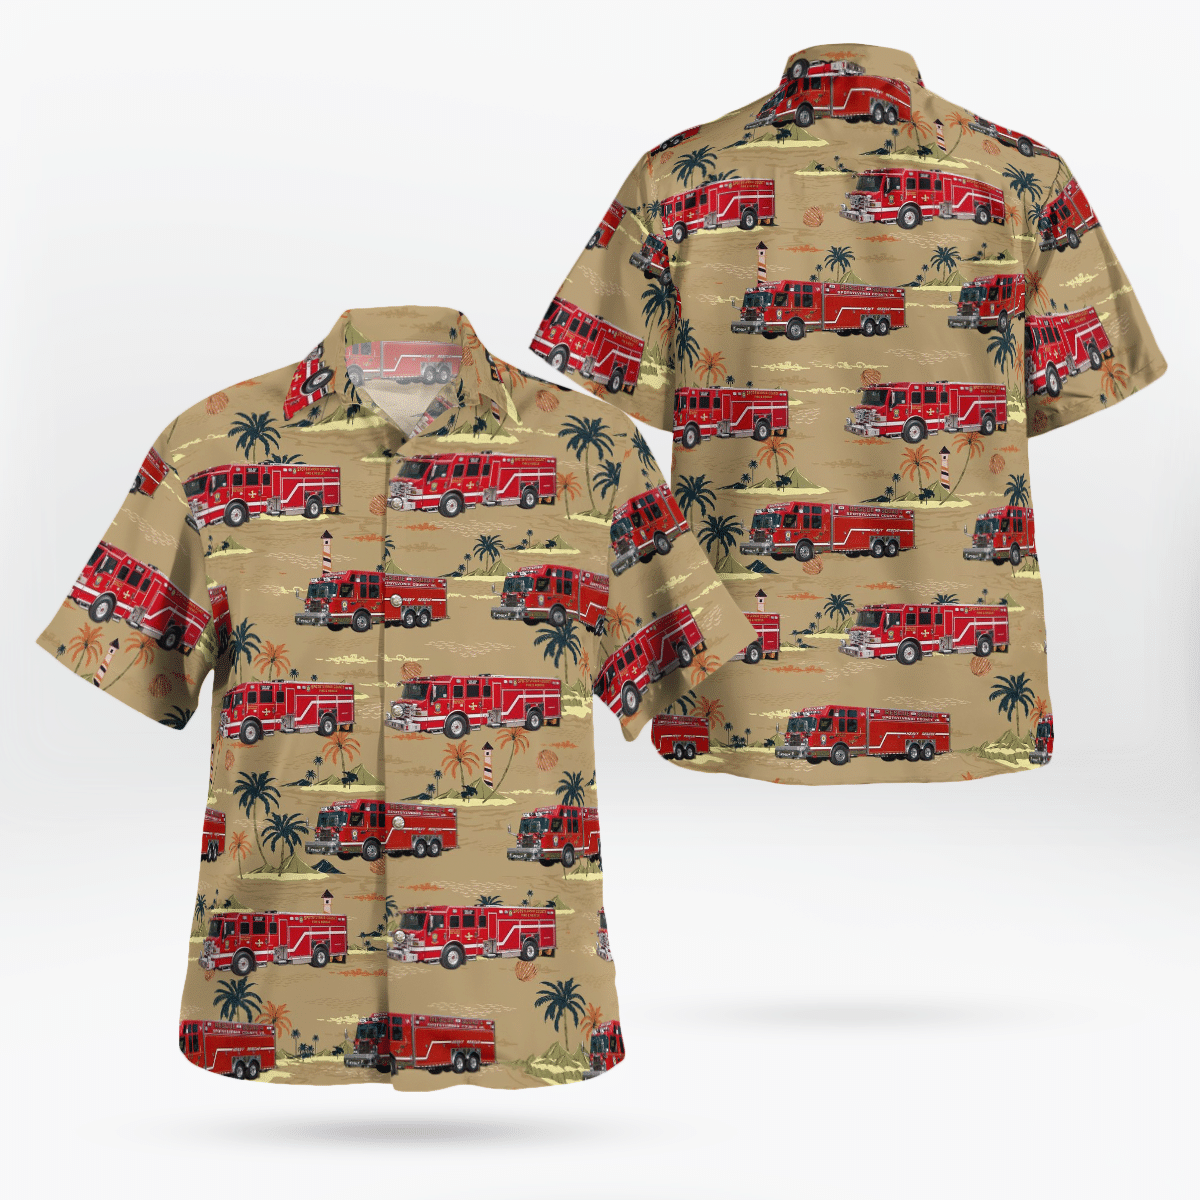 Best Hawaiian shirts 2022 210